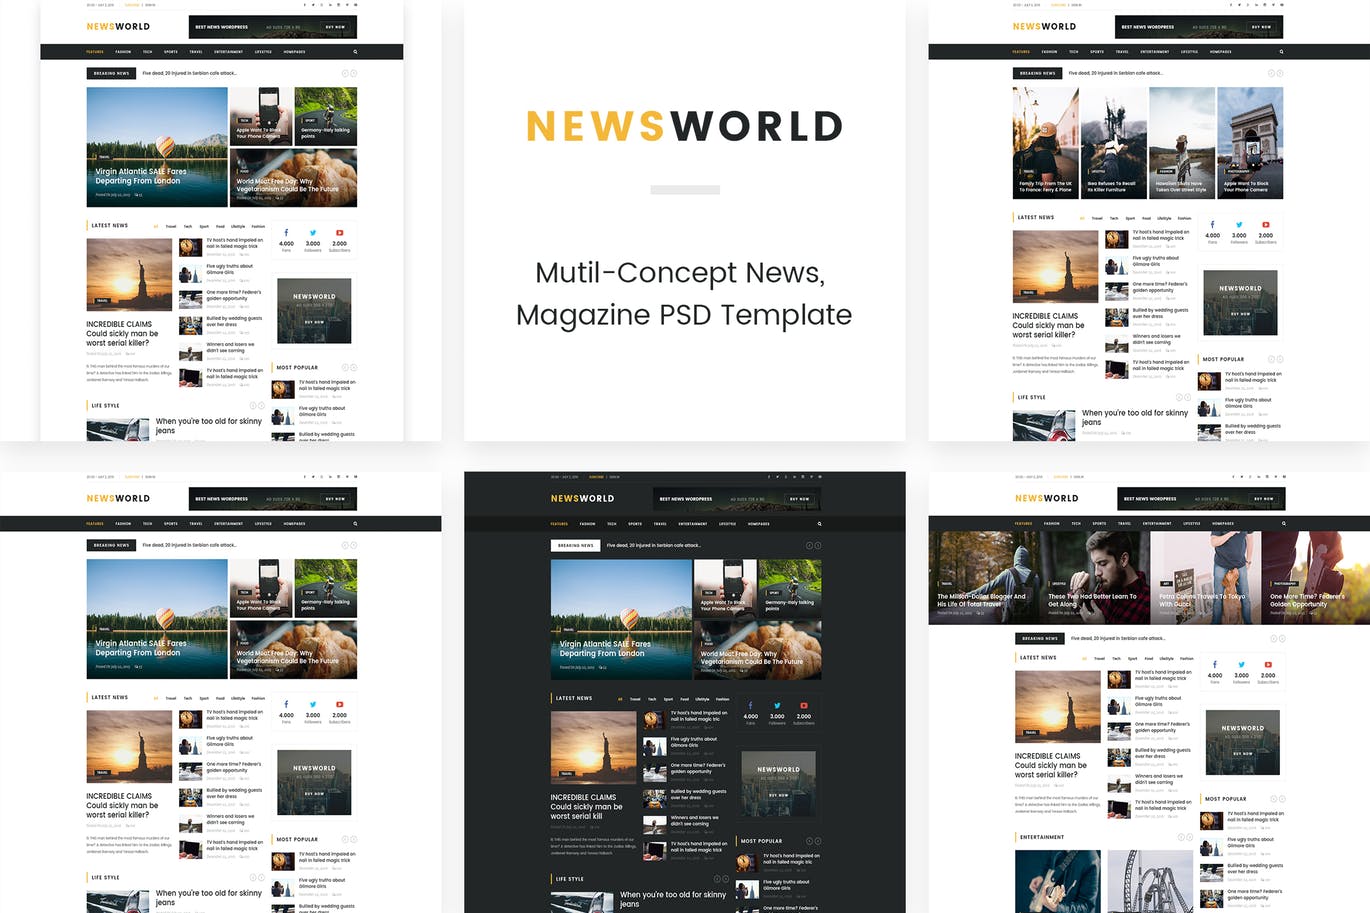 新闻资讯杂志类网站设计HTML模板第一素材精选 Newsworld | Mutil-Concept Magazine HTML5 Template插图